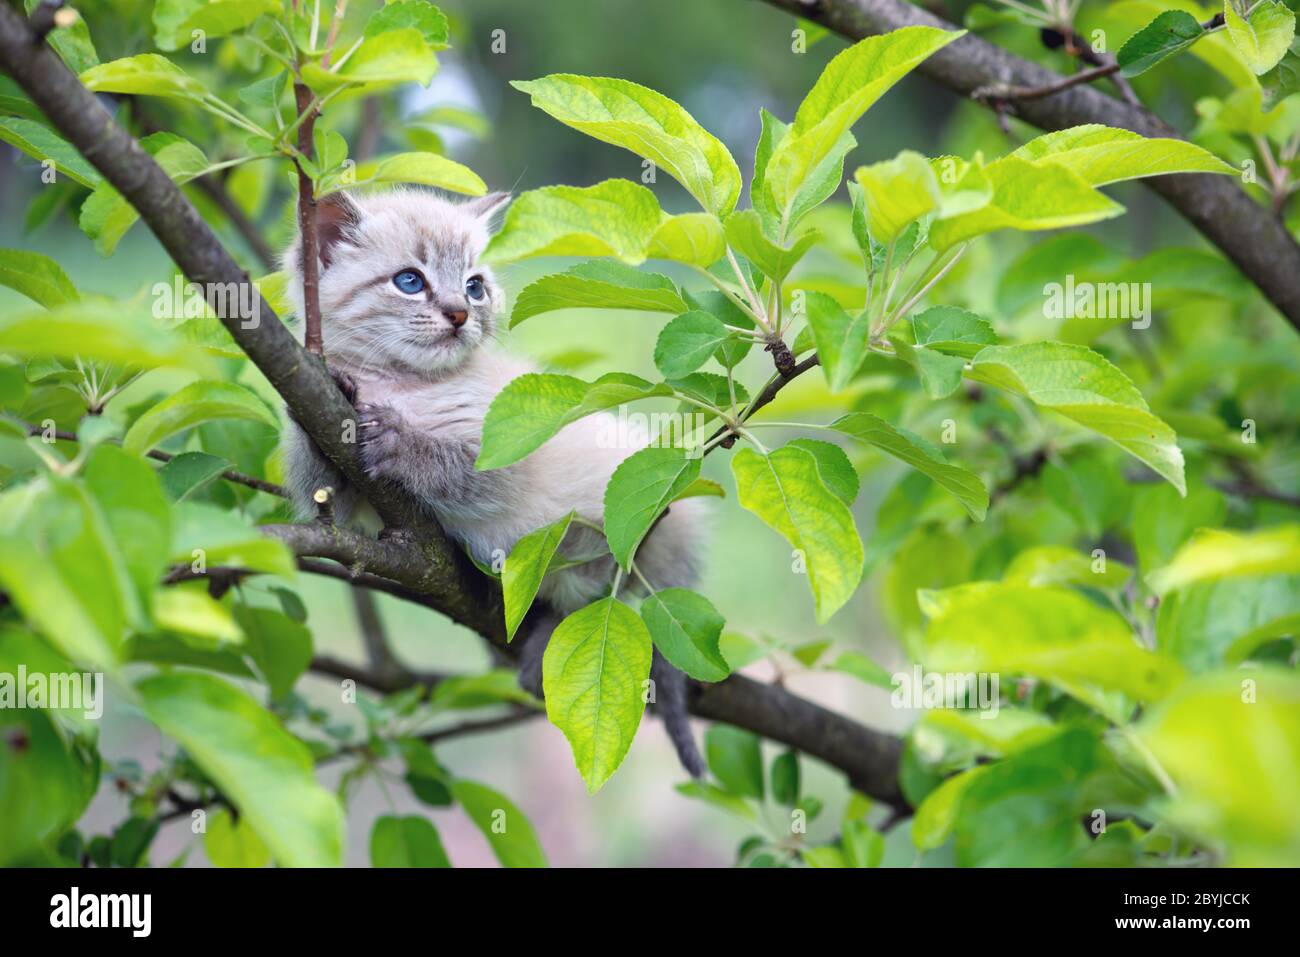 Gatto gattino con ayes blu bloccato su albero verde in giardino. Fotografia di animali domestici Foto Stock